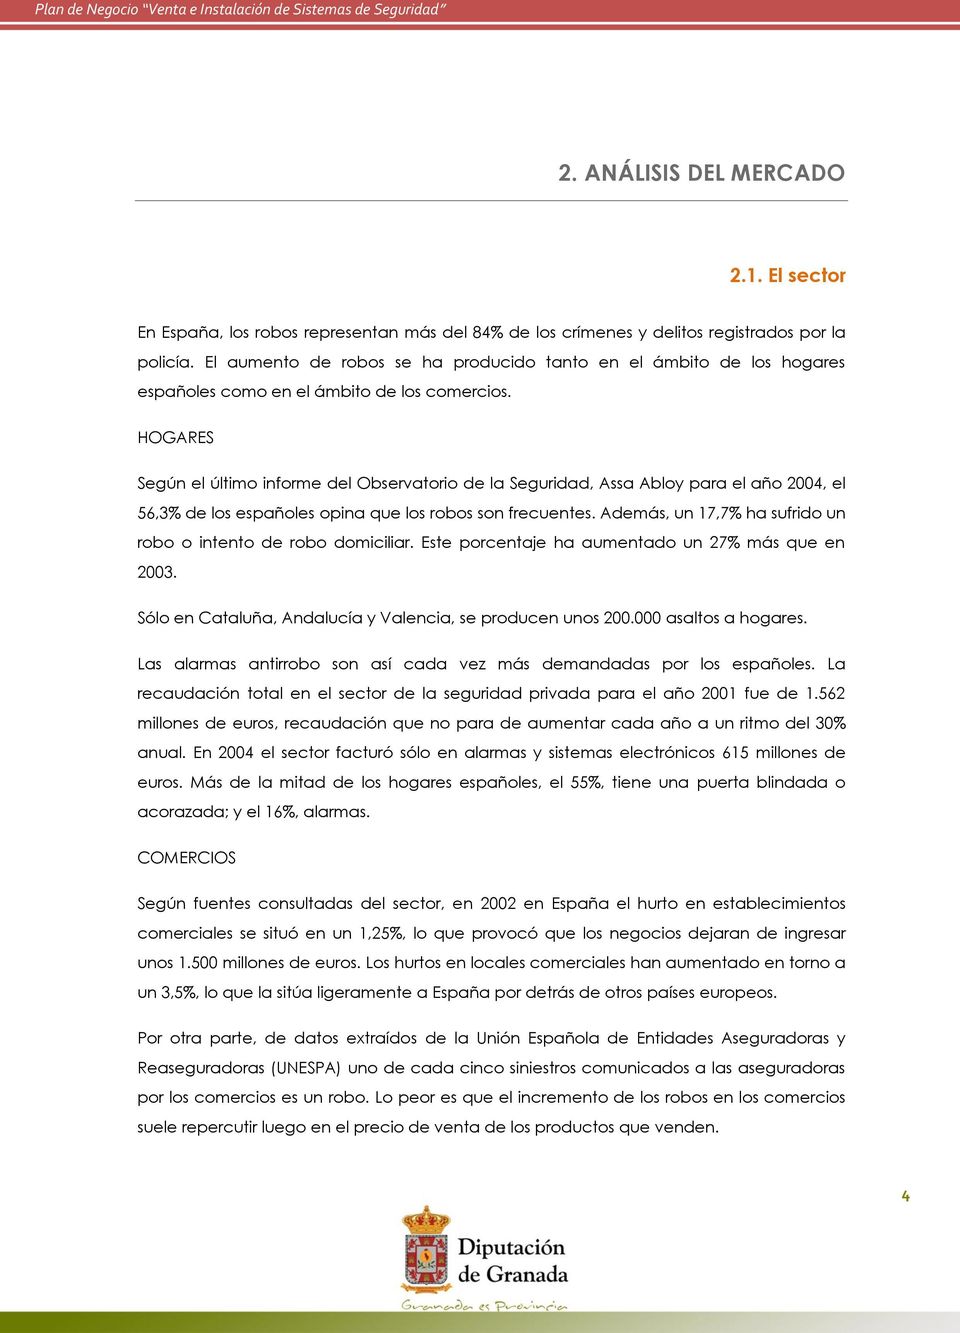 HOGARES Según el último informe del Observatorio de la Seguridad, Assa Abloy para el año 2004, el 56,3% de los españoles opina que los robos son frecuentes.